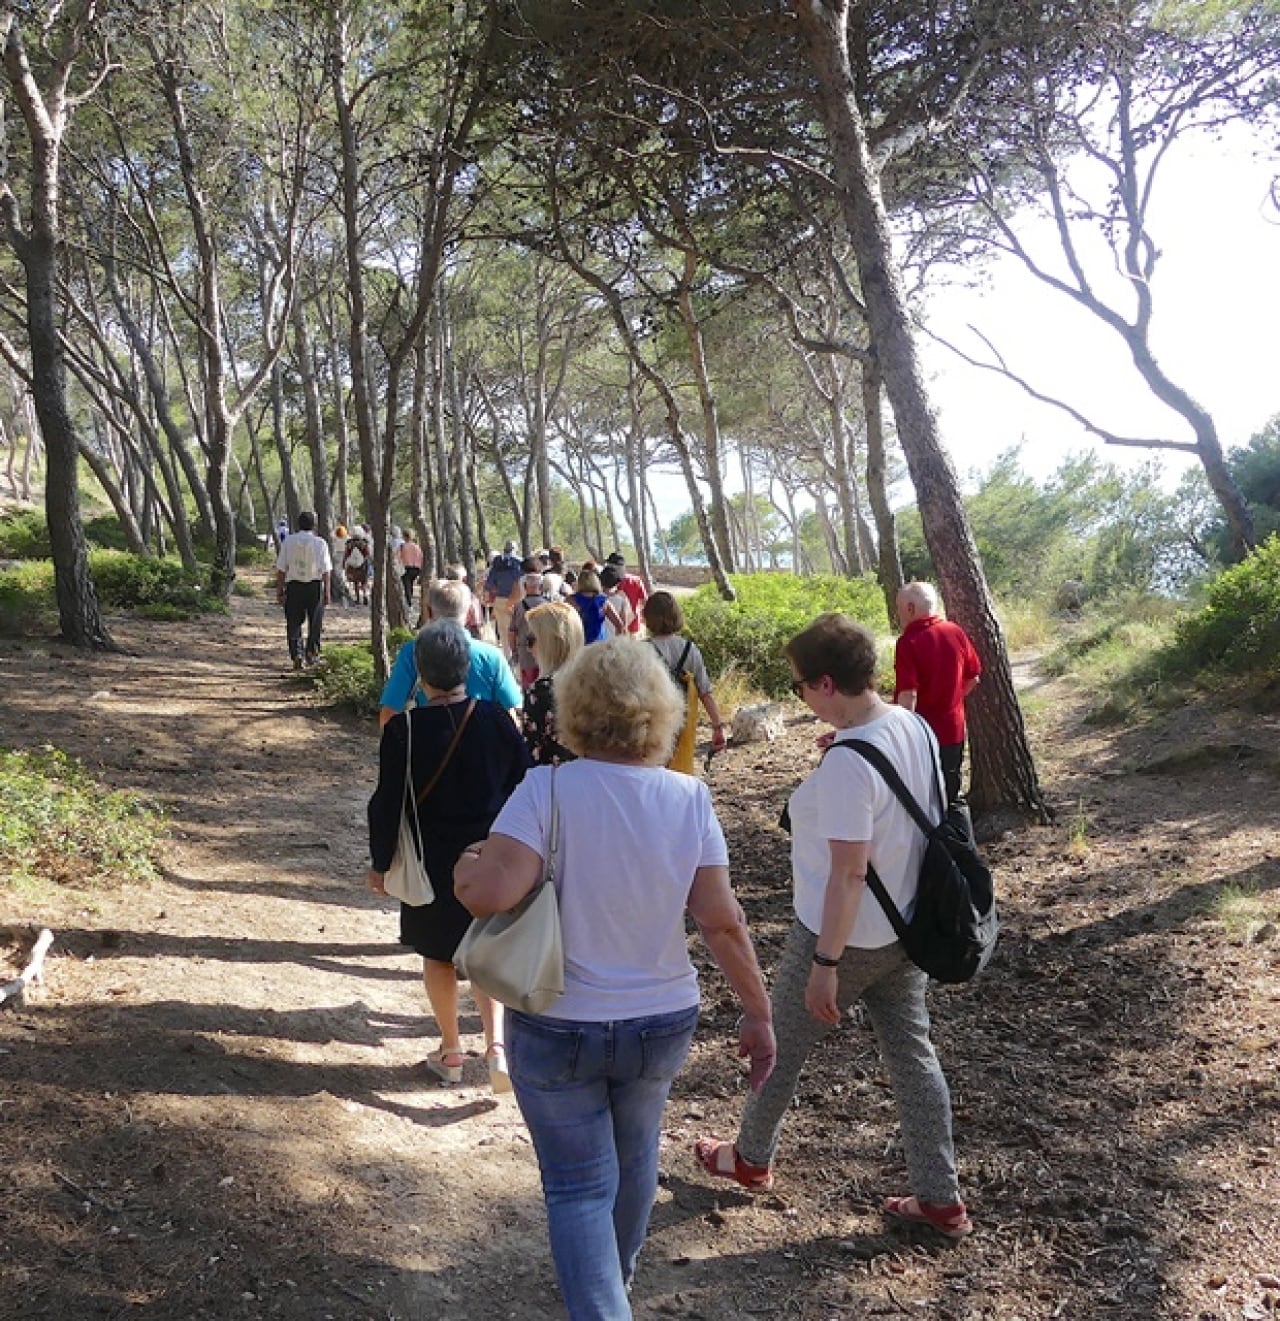 Prop de 90 persones va fer la Ruta dels Miradors, que transcorre pel Camí de Ronda, amb parada en diverses platges i miradors